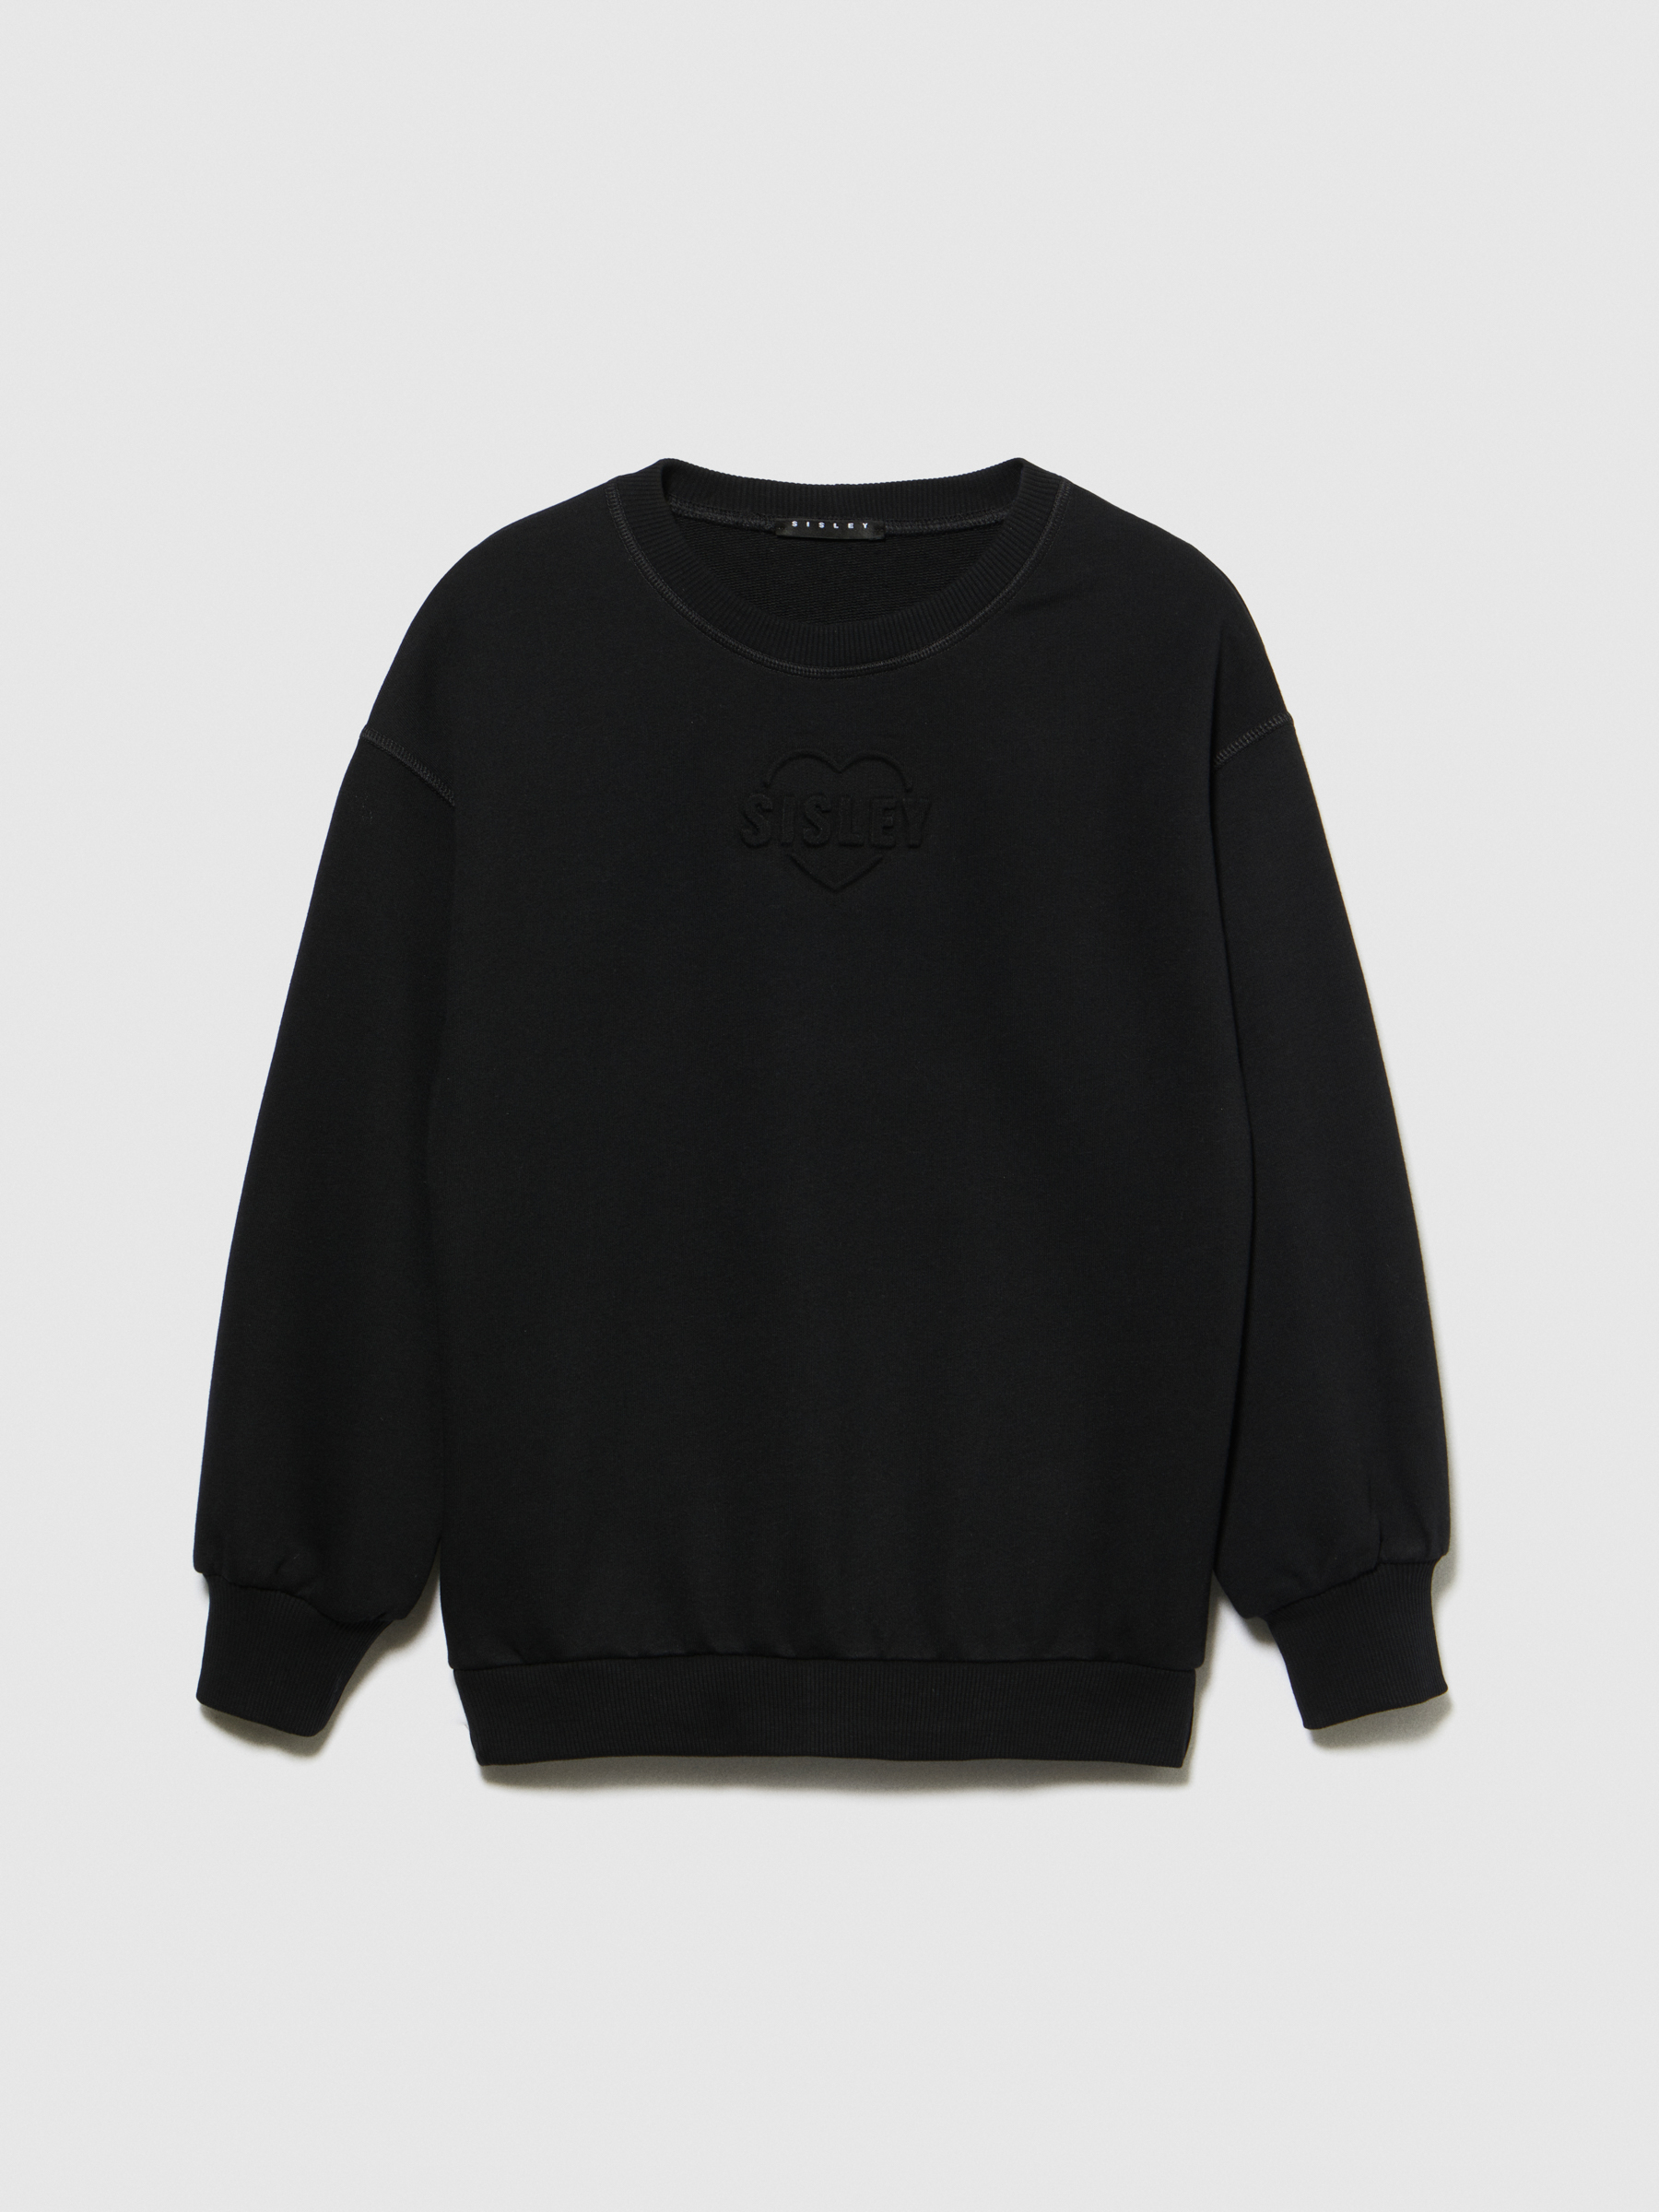 Sisley Young - Sweatshirt With Embossed Print, Woman, Black, Size: XS